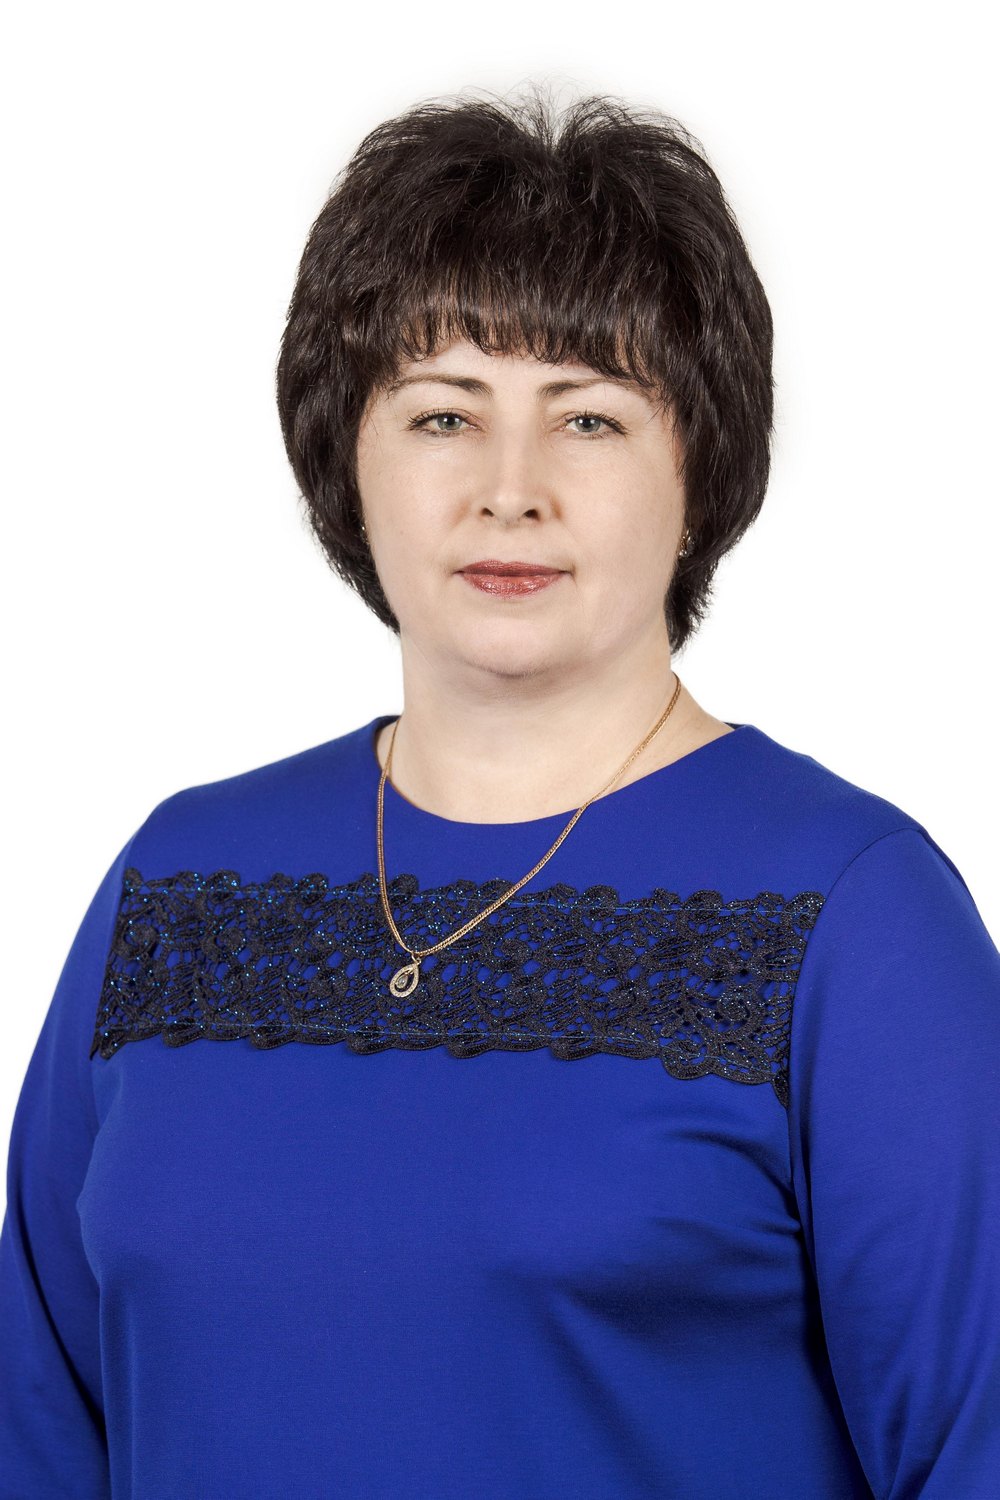 Липатова Елена Викторовна